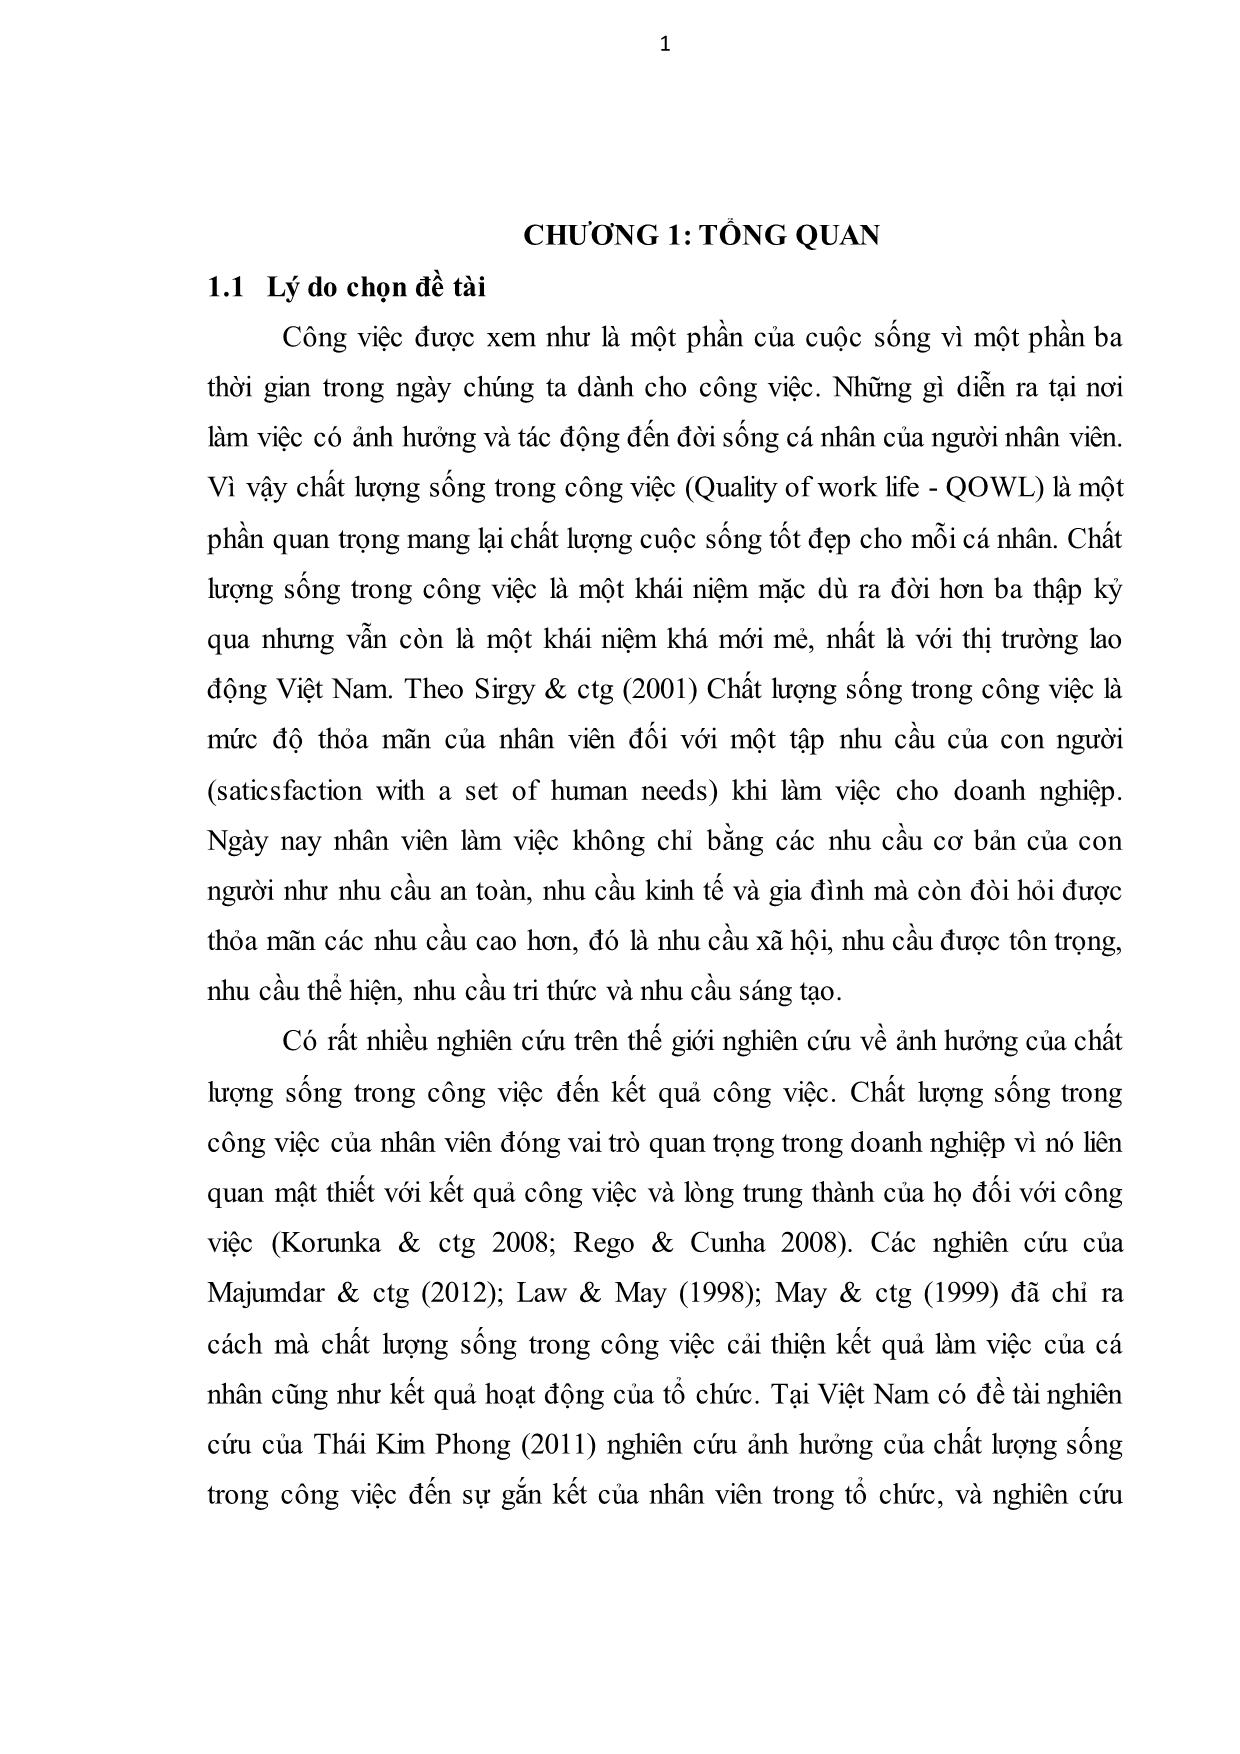 Luận văn Chất lượng sống trong công việc và kết quả công việc của nhân viên du học sinh Việt Nam trang 8